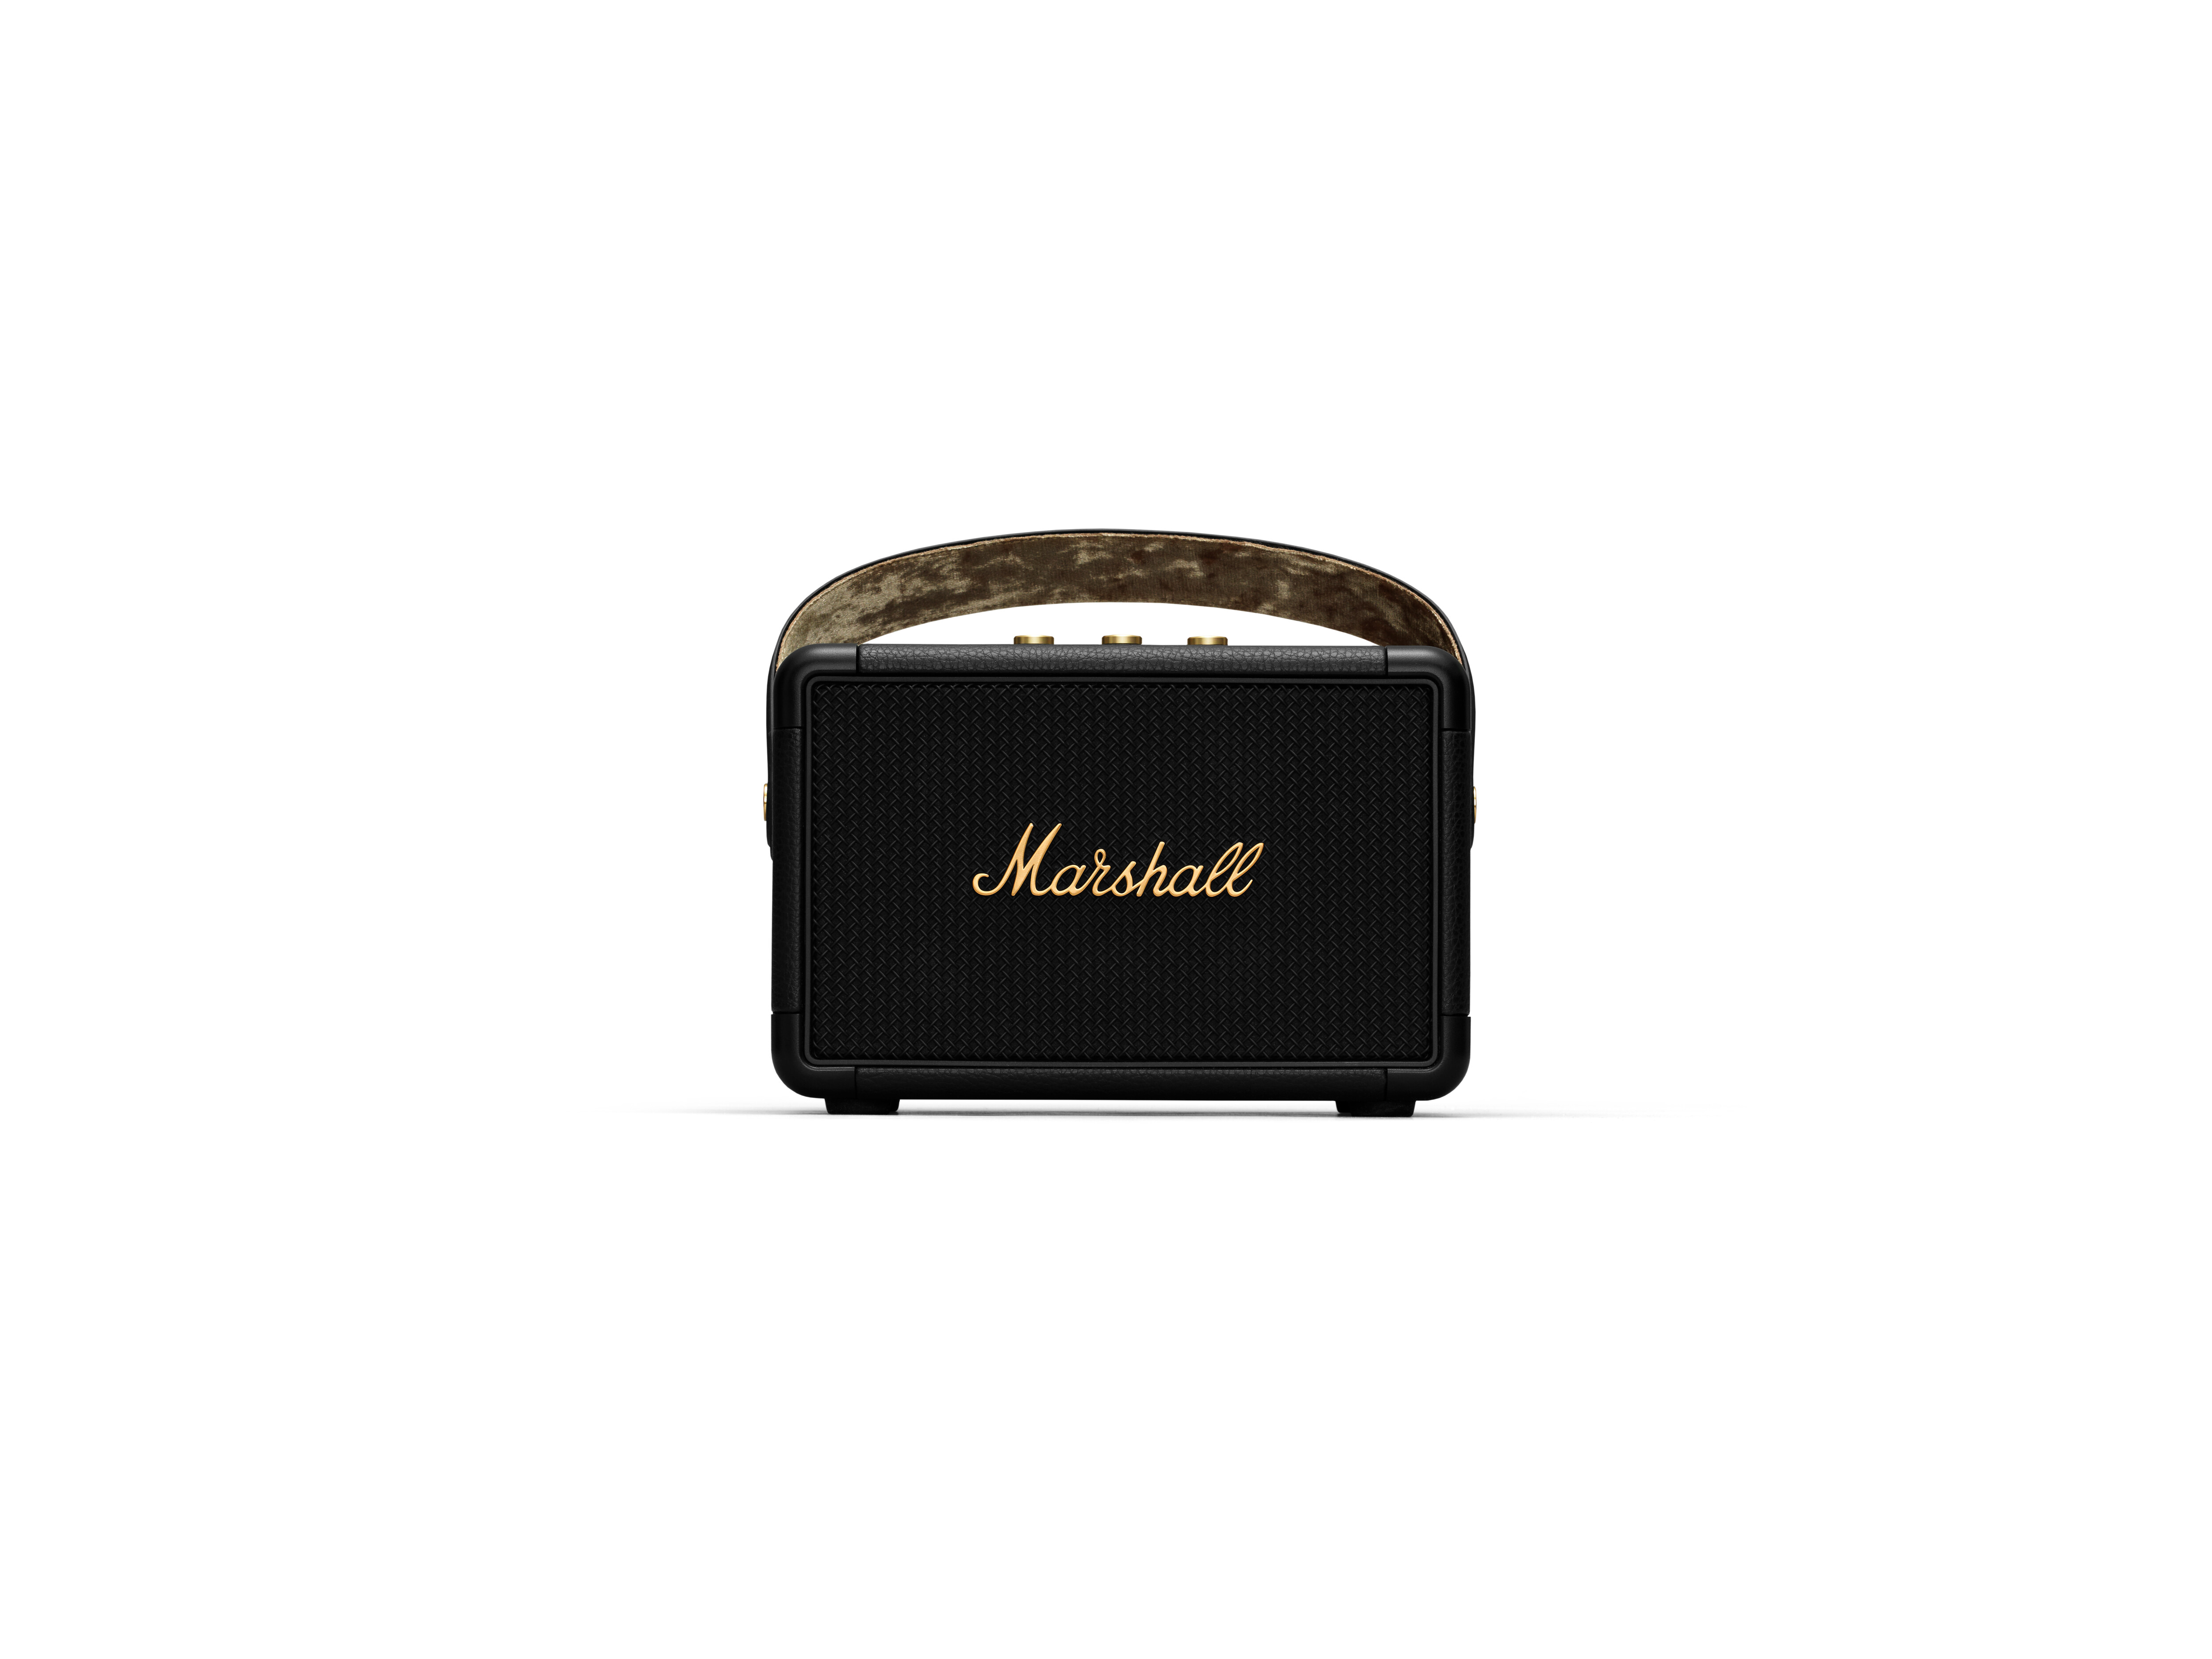 Marshall KILBURN II Portable Speaker - Black & Brass, , large image number 0